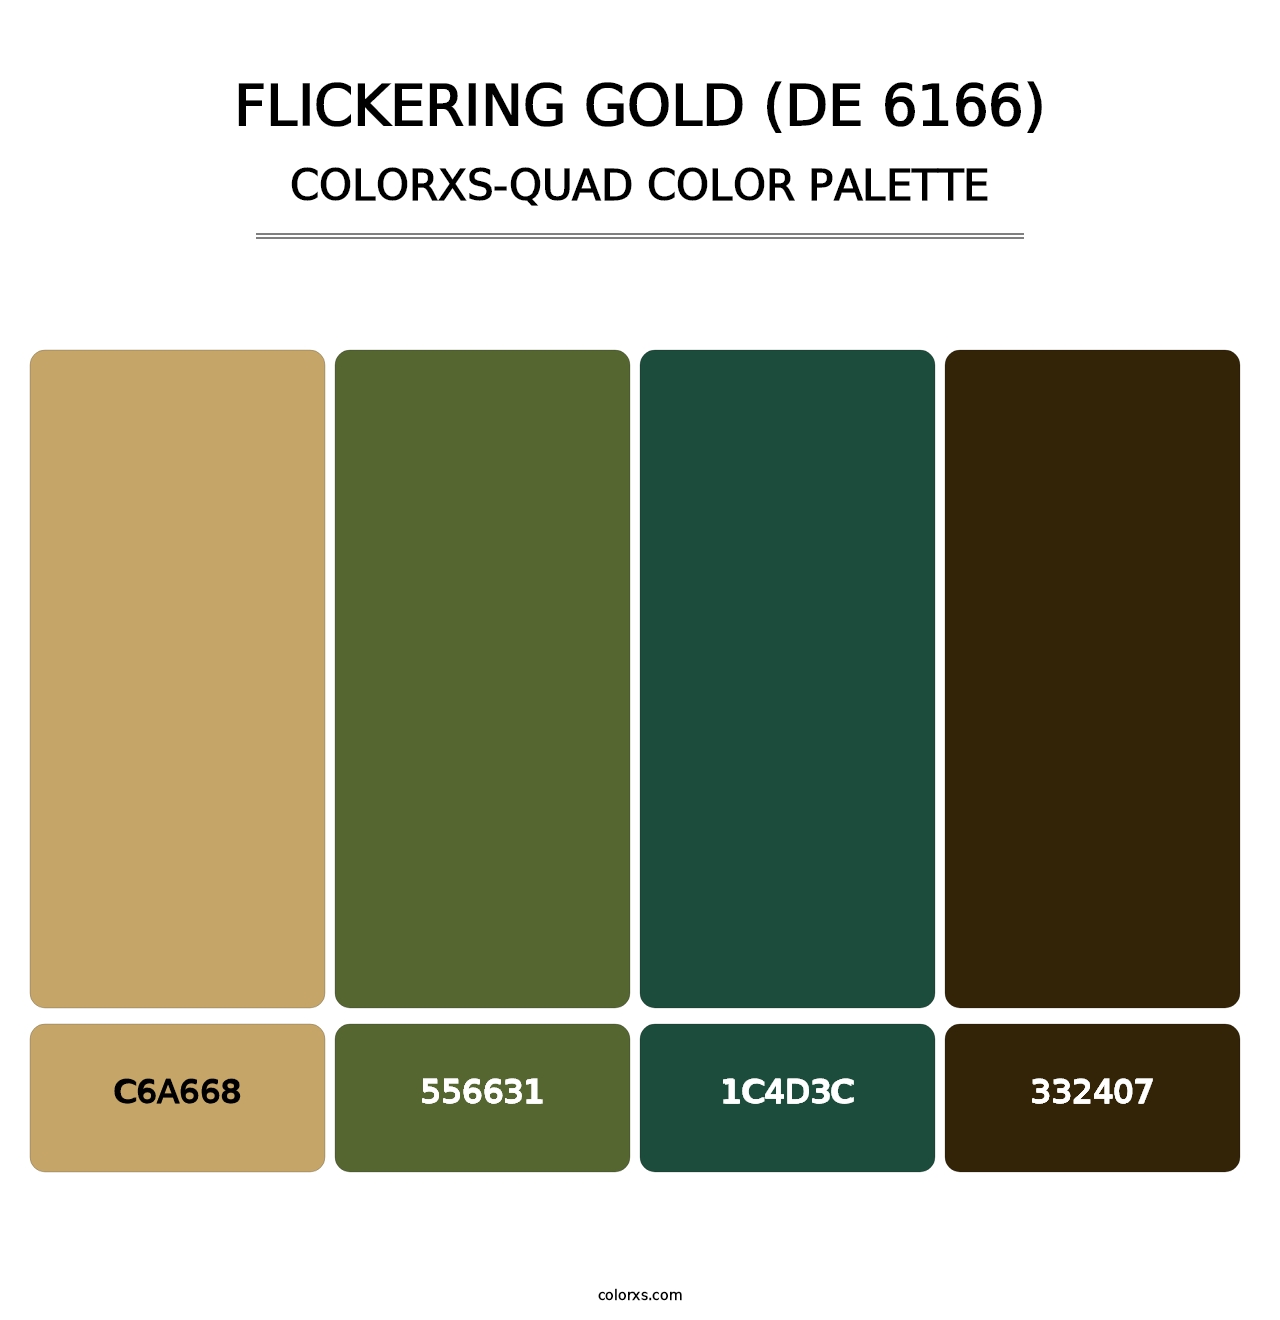 Flickering Gold (DE 6166) - Colorxs Quad Palette